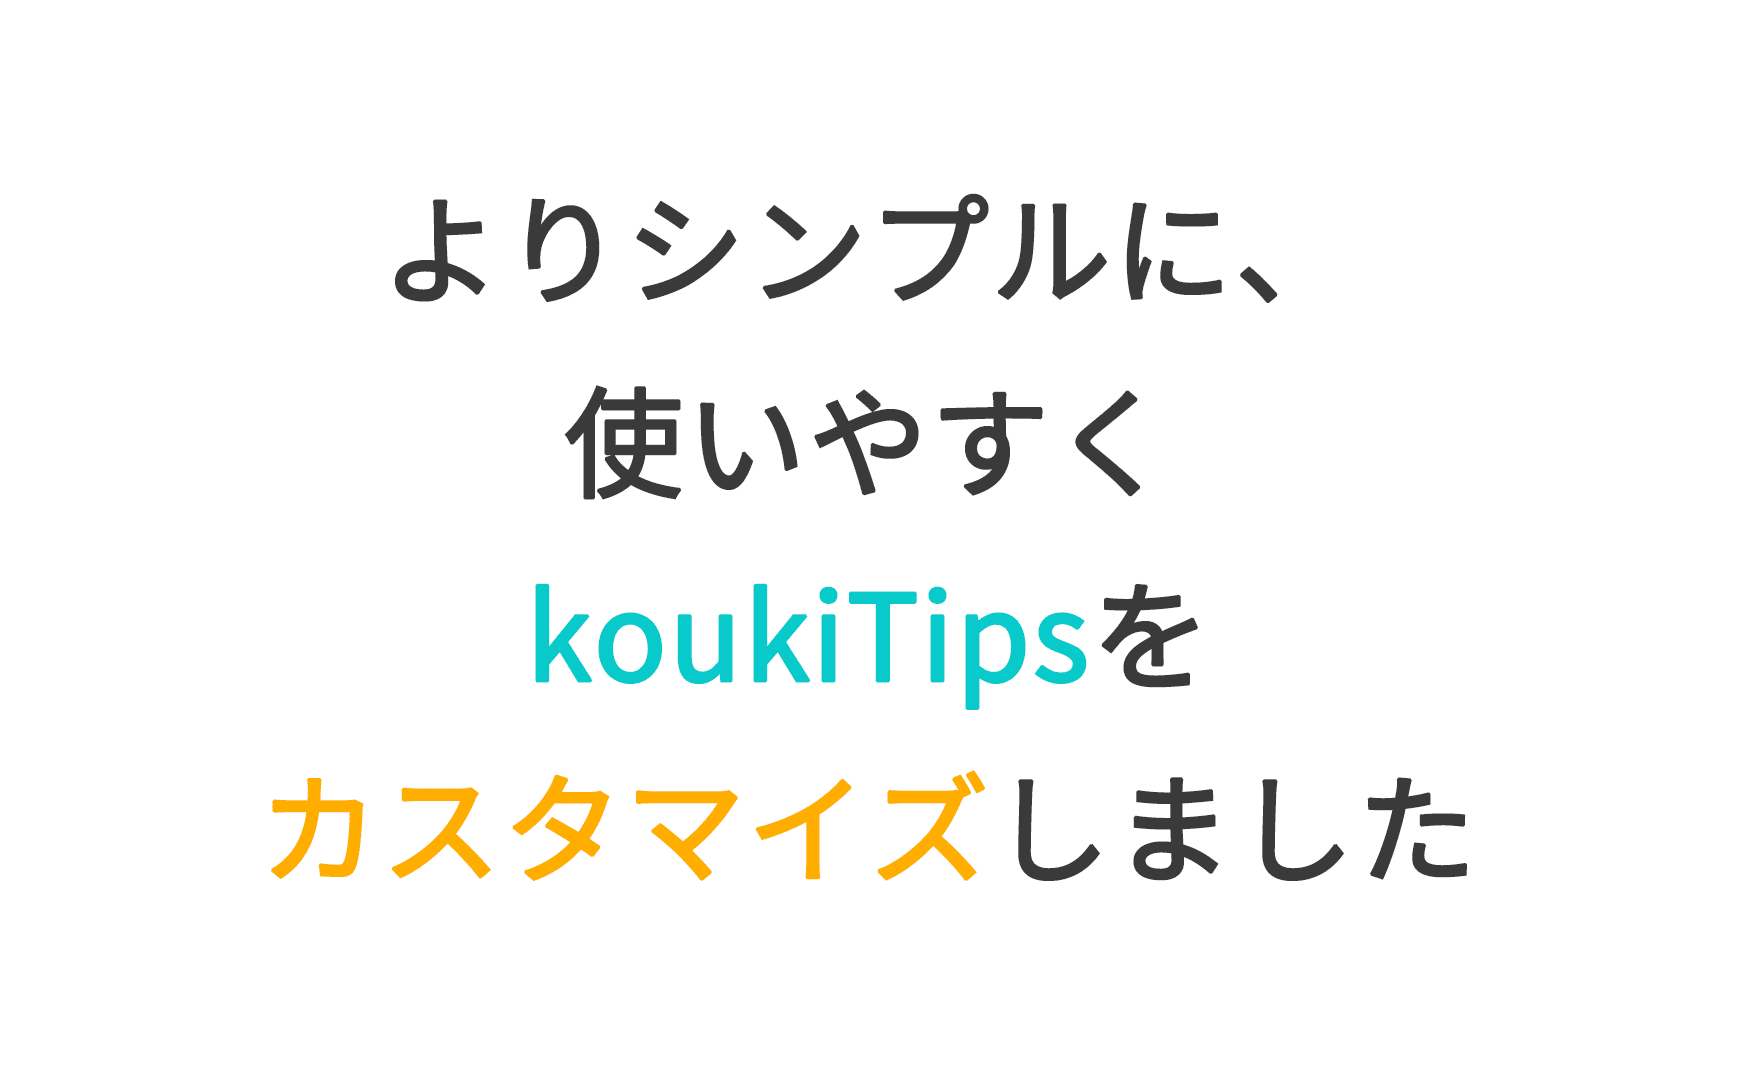 よりシンプルに、使いやすくkoukiTipsをカスタマイズしました